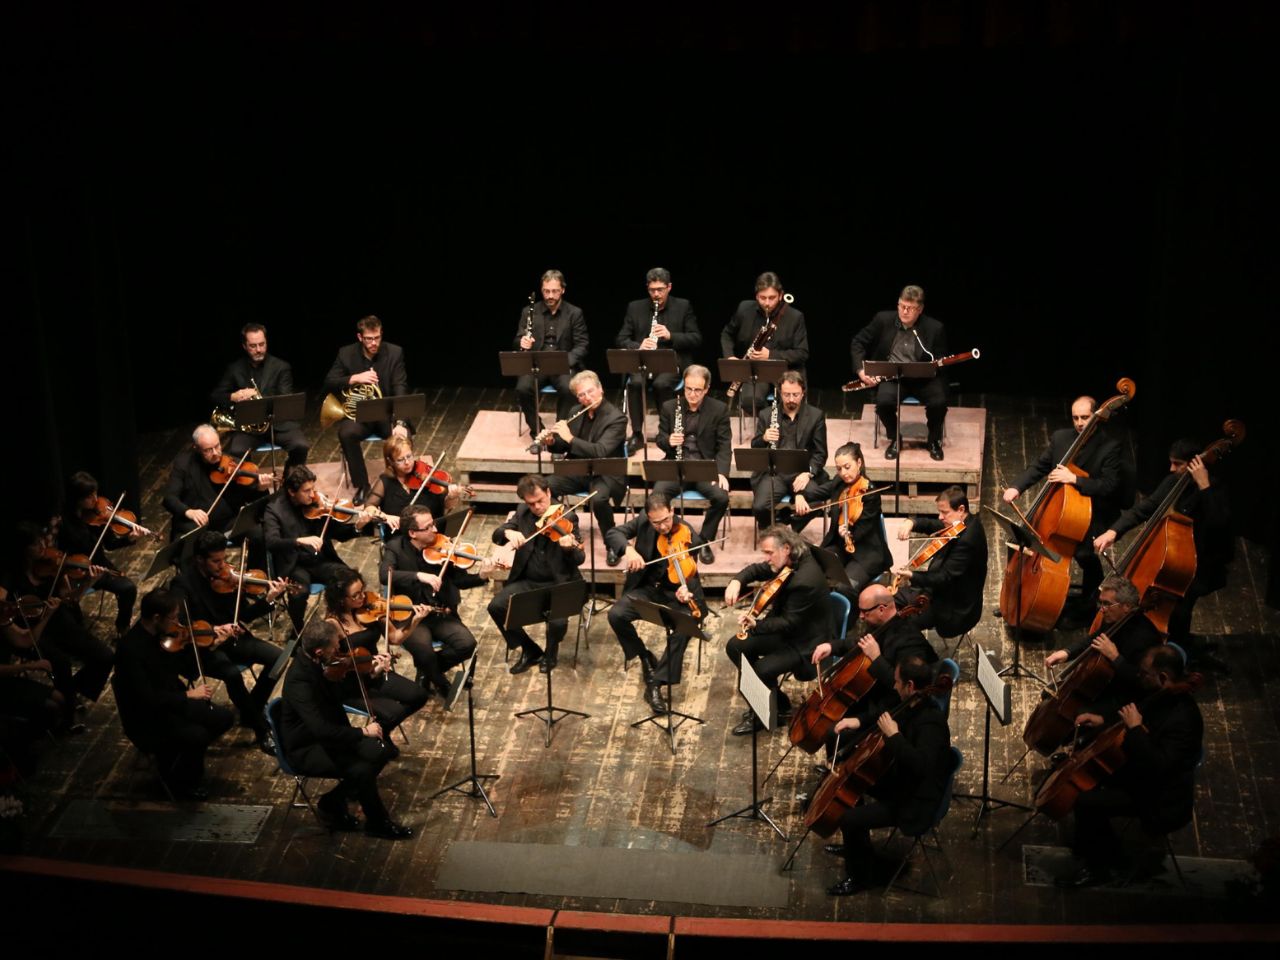 Torna AnconaClassica: il 1 febbraio, al Teatro Sperimentale, la Form e Michele Campanella in viaggio con Mozart, Schumann e Weber